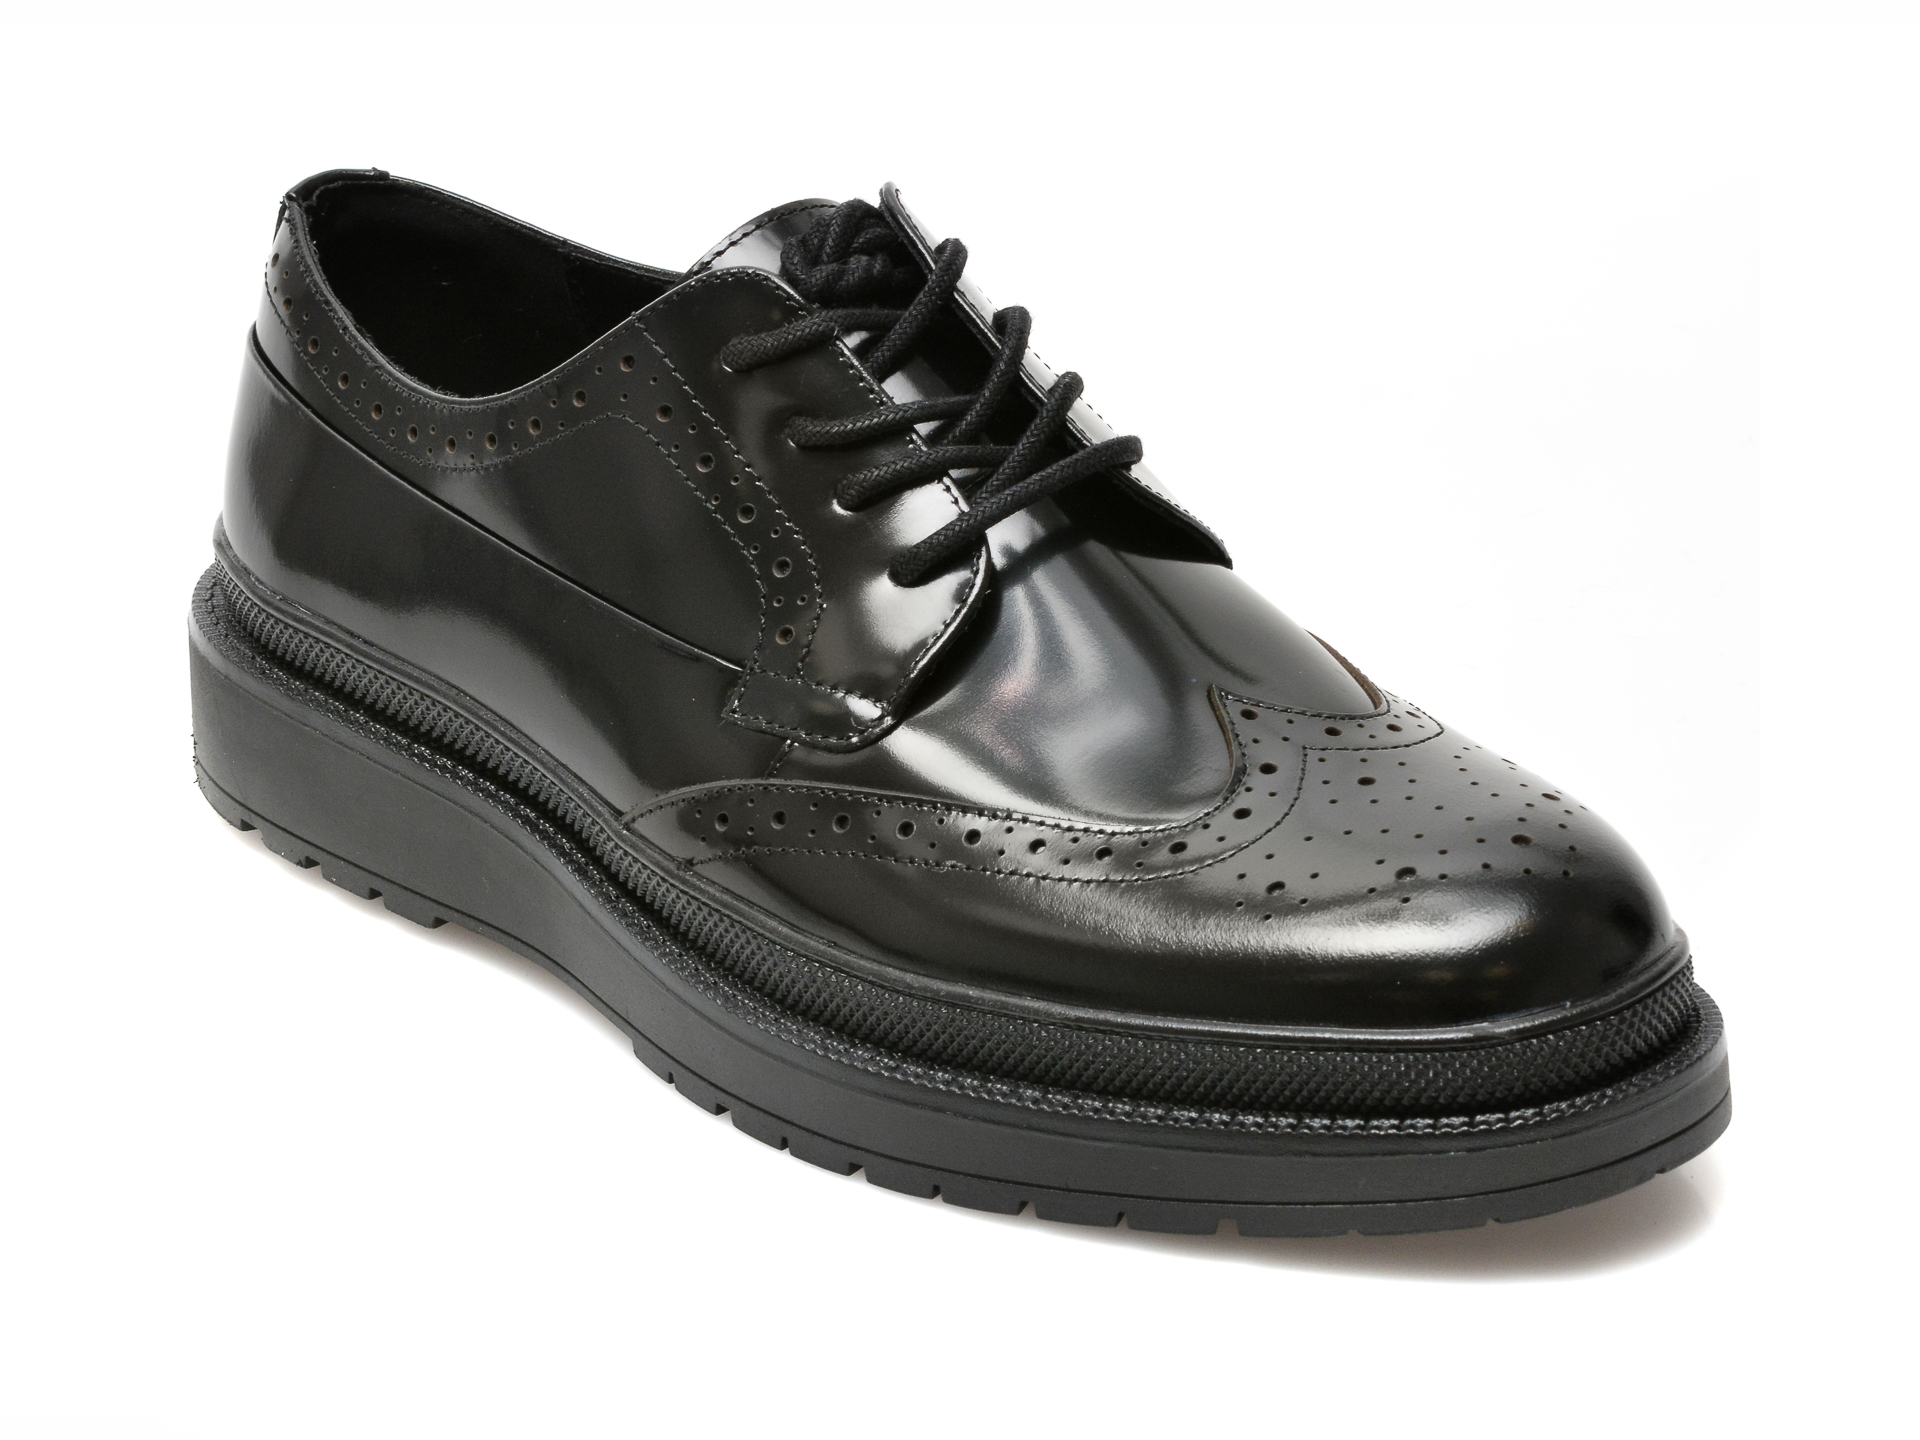 Pantofi ALDO negri, BEZOS001, din piele naturala lacuita Aldo